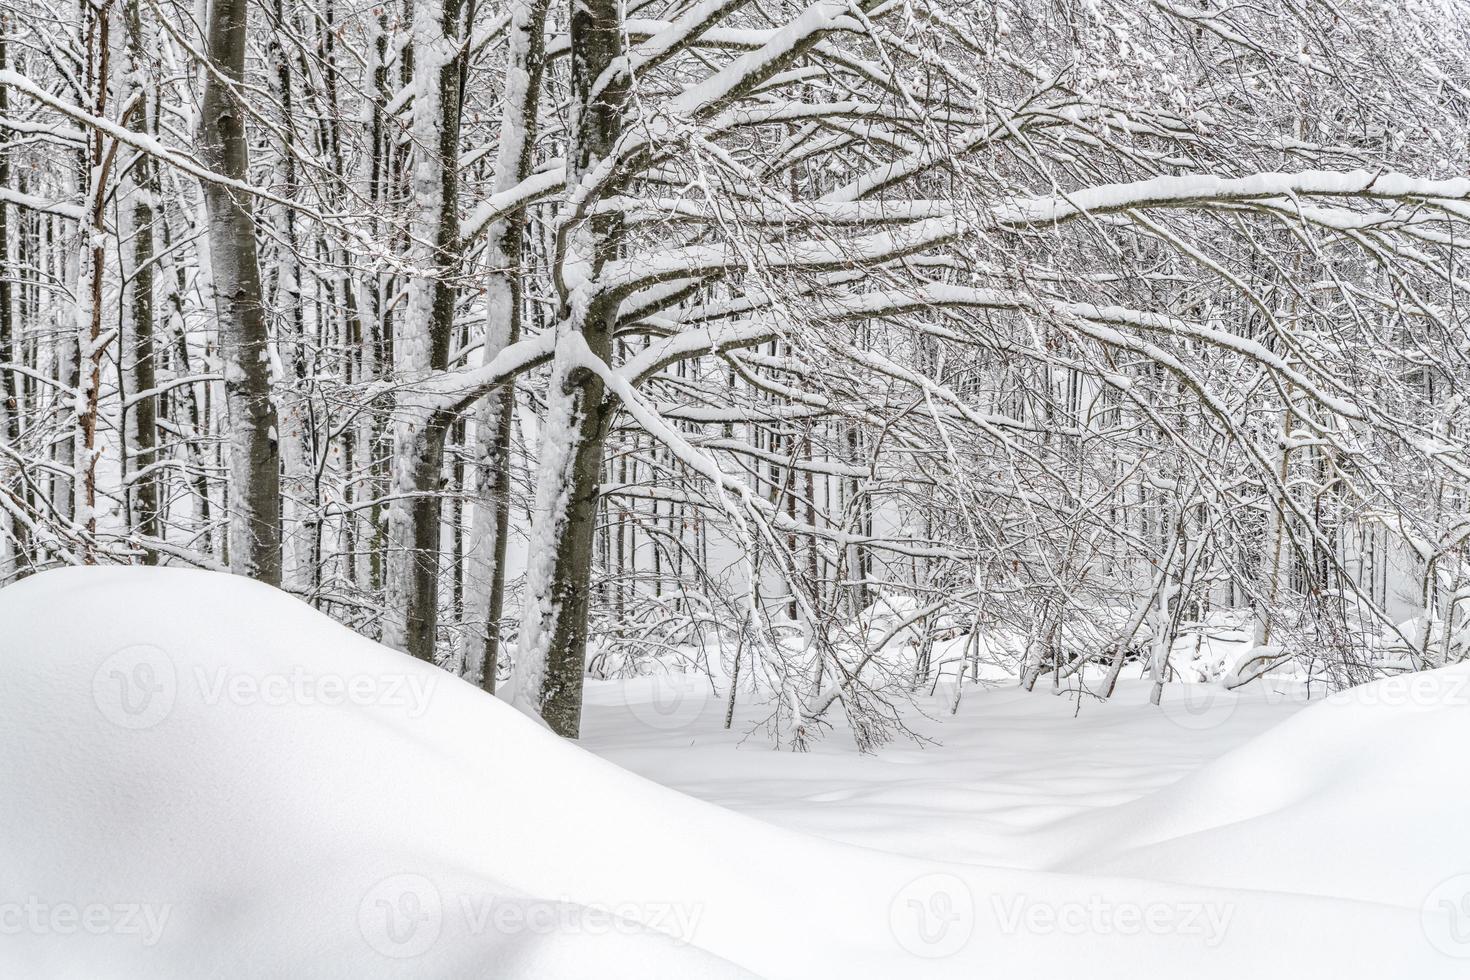 Dämmerung und Farben des verschneiten Waldes. Schnee und Kälte. foto